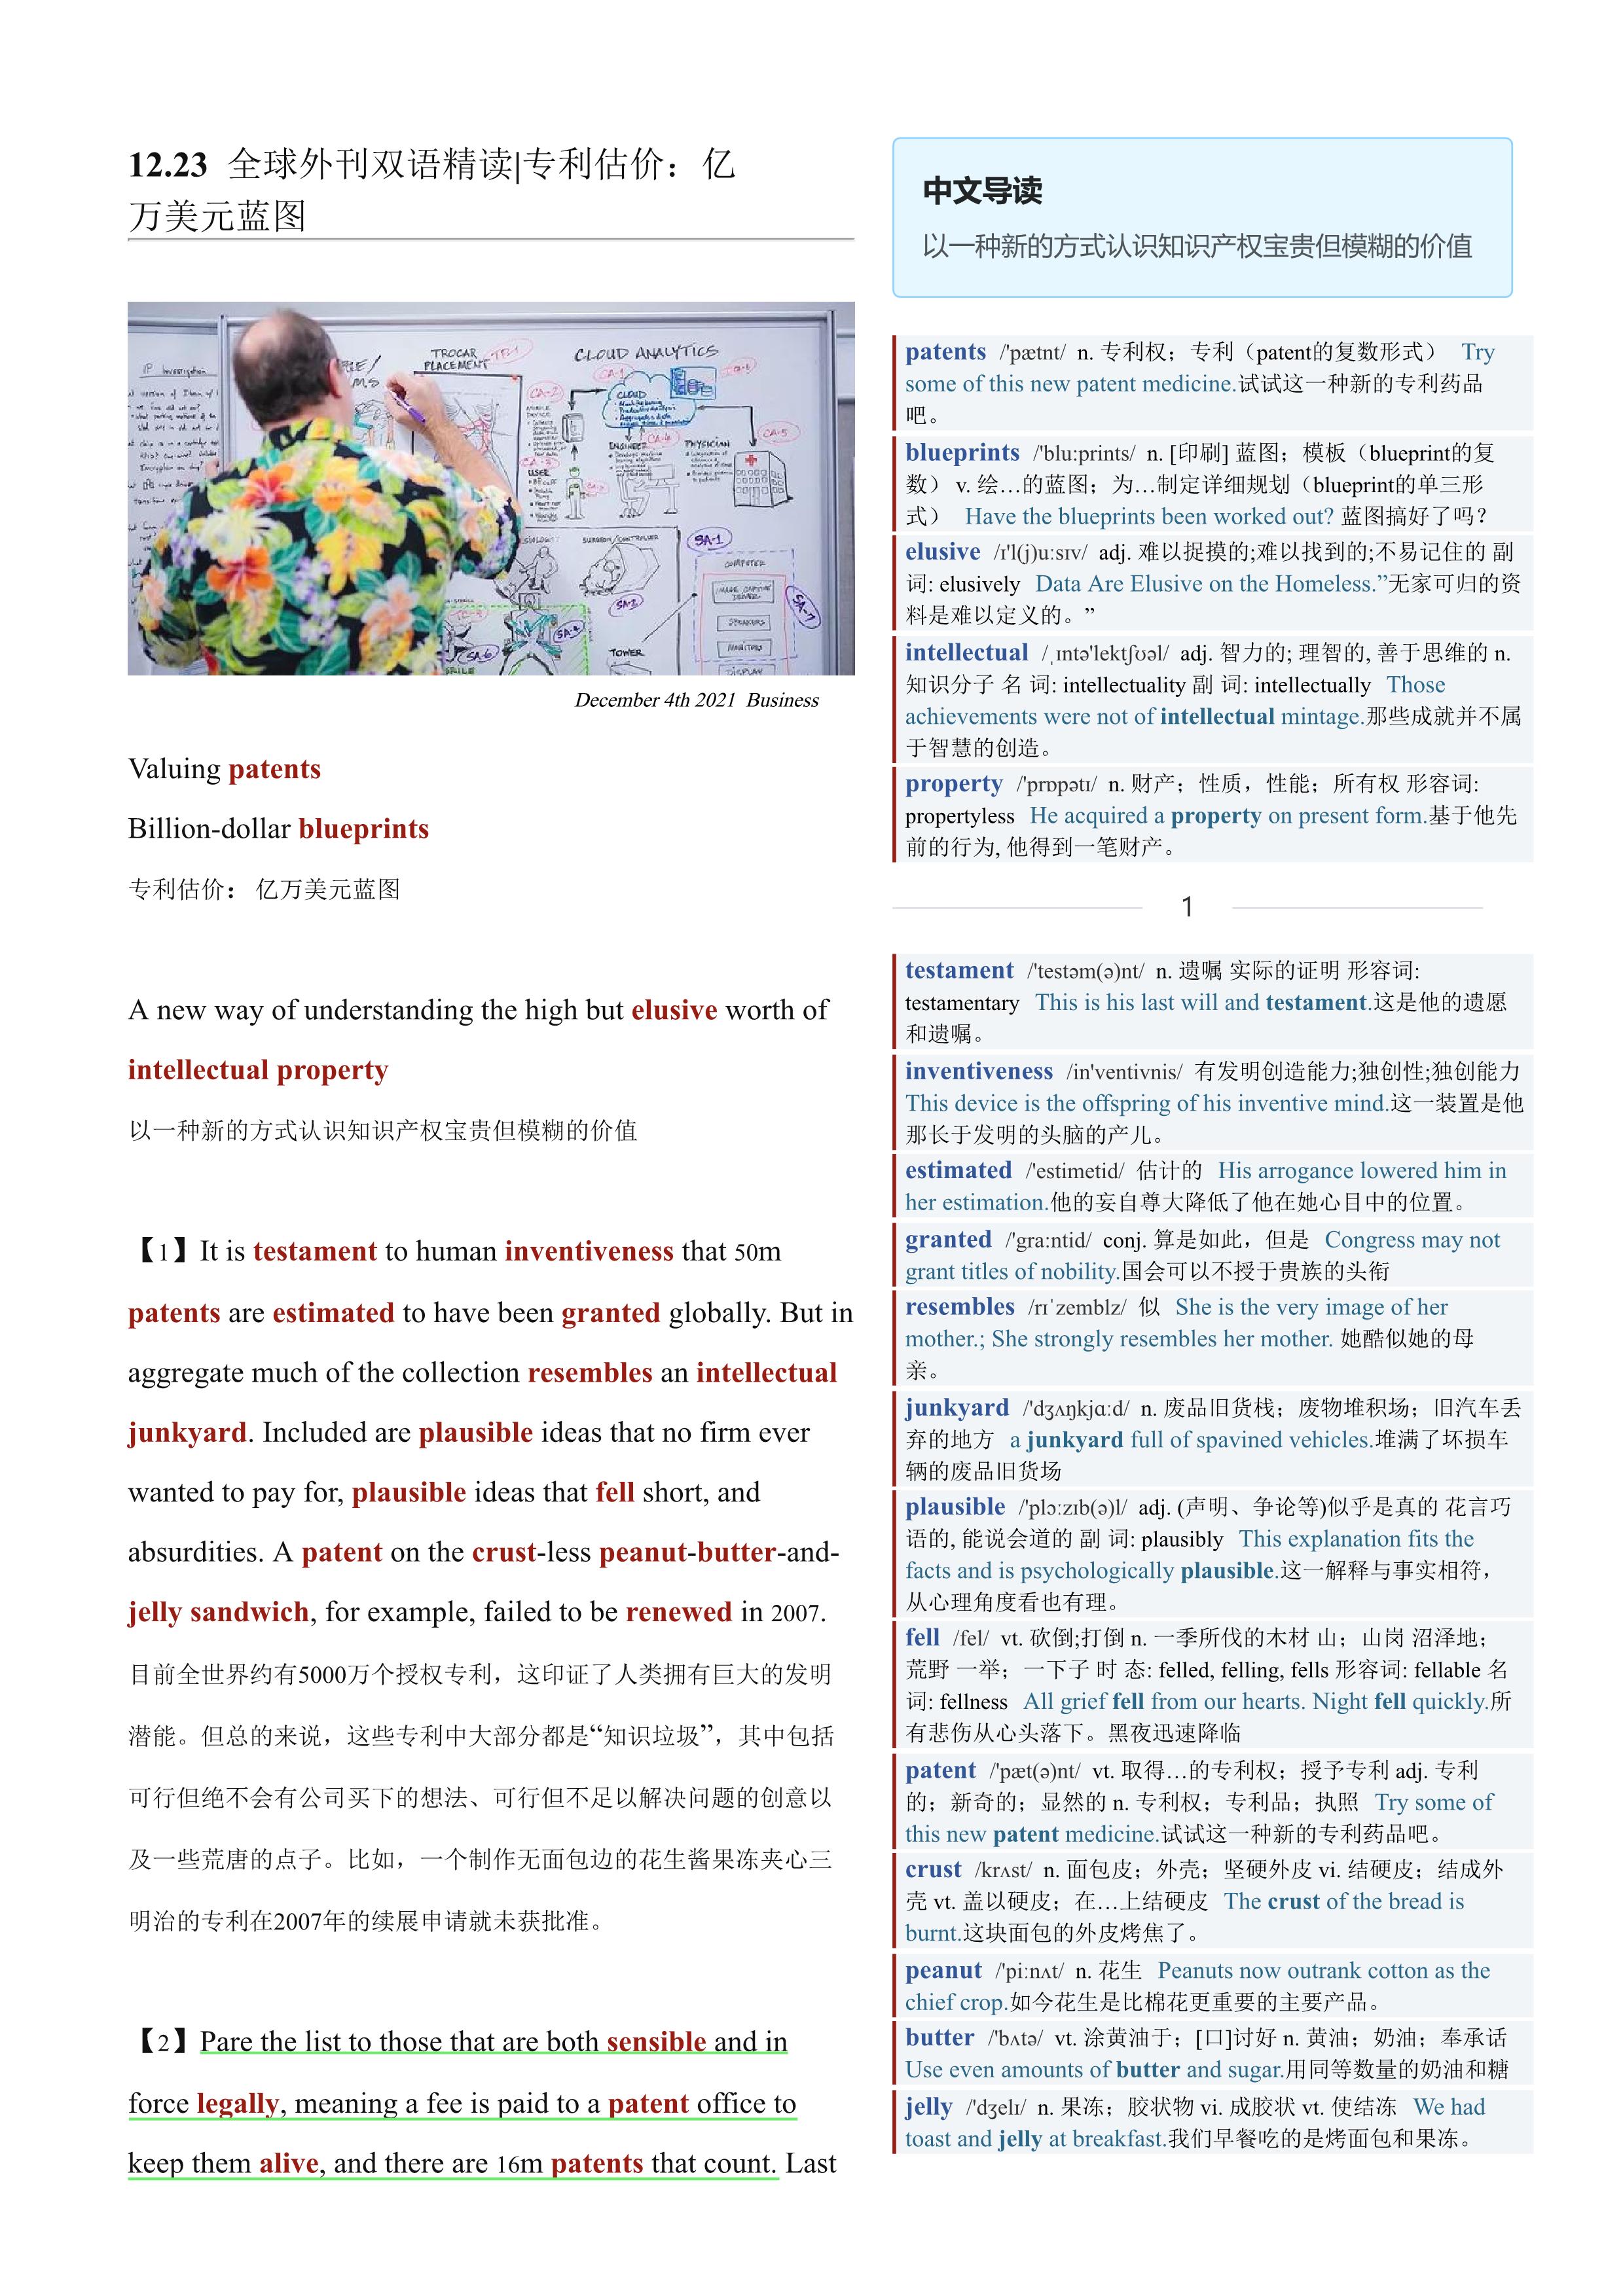 2021.12.23 经济学人双语精读丨专利估价：亿万美元蓝图 (.PDF/DOC/MP3)